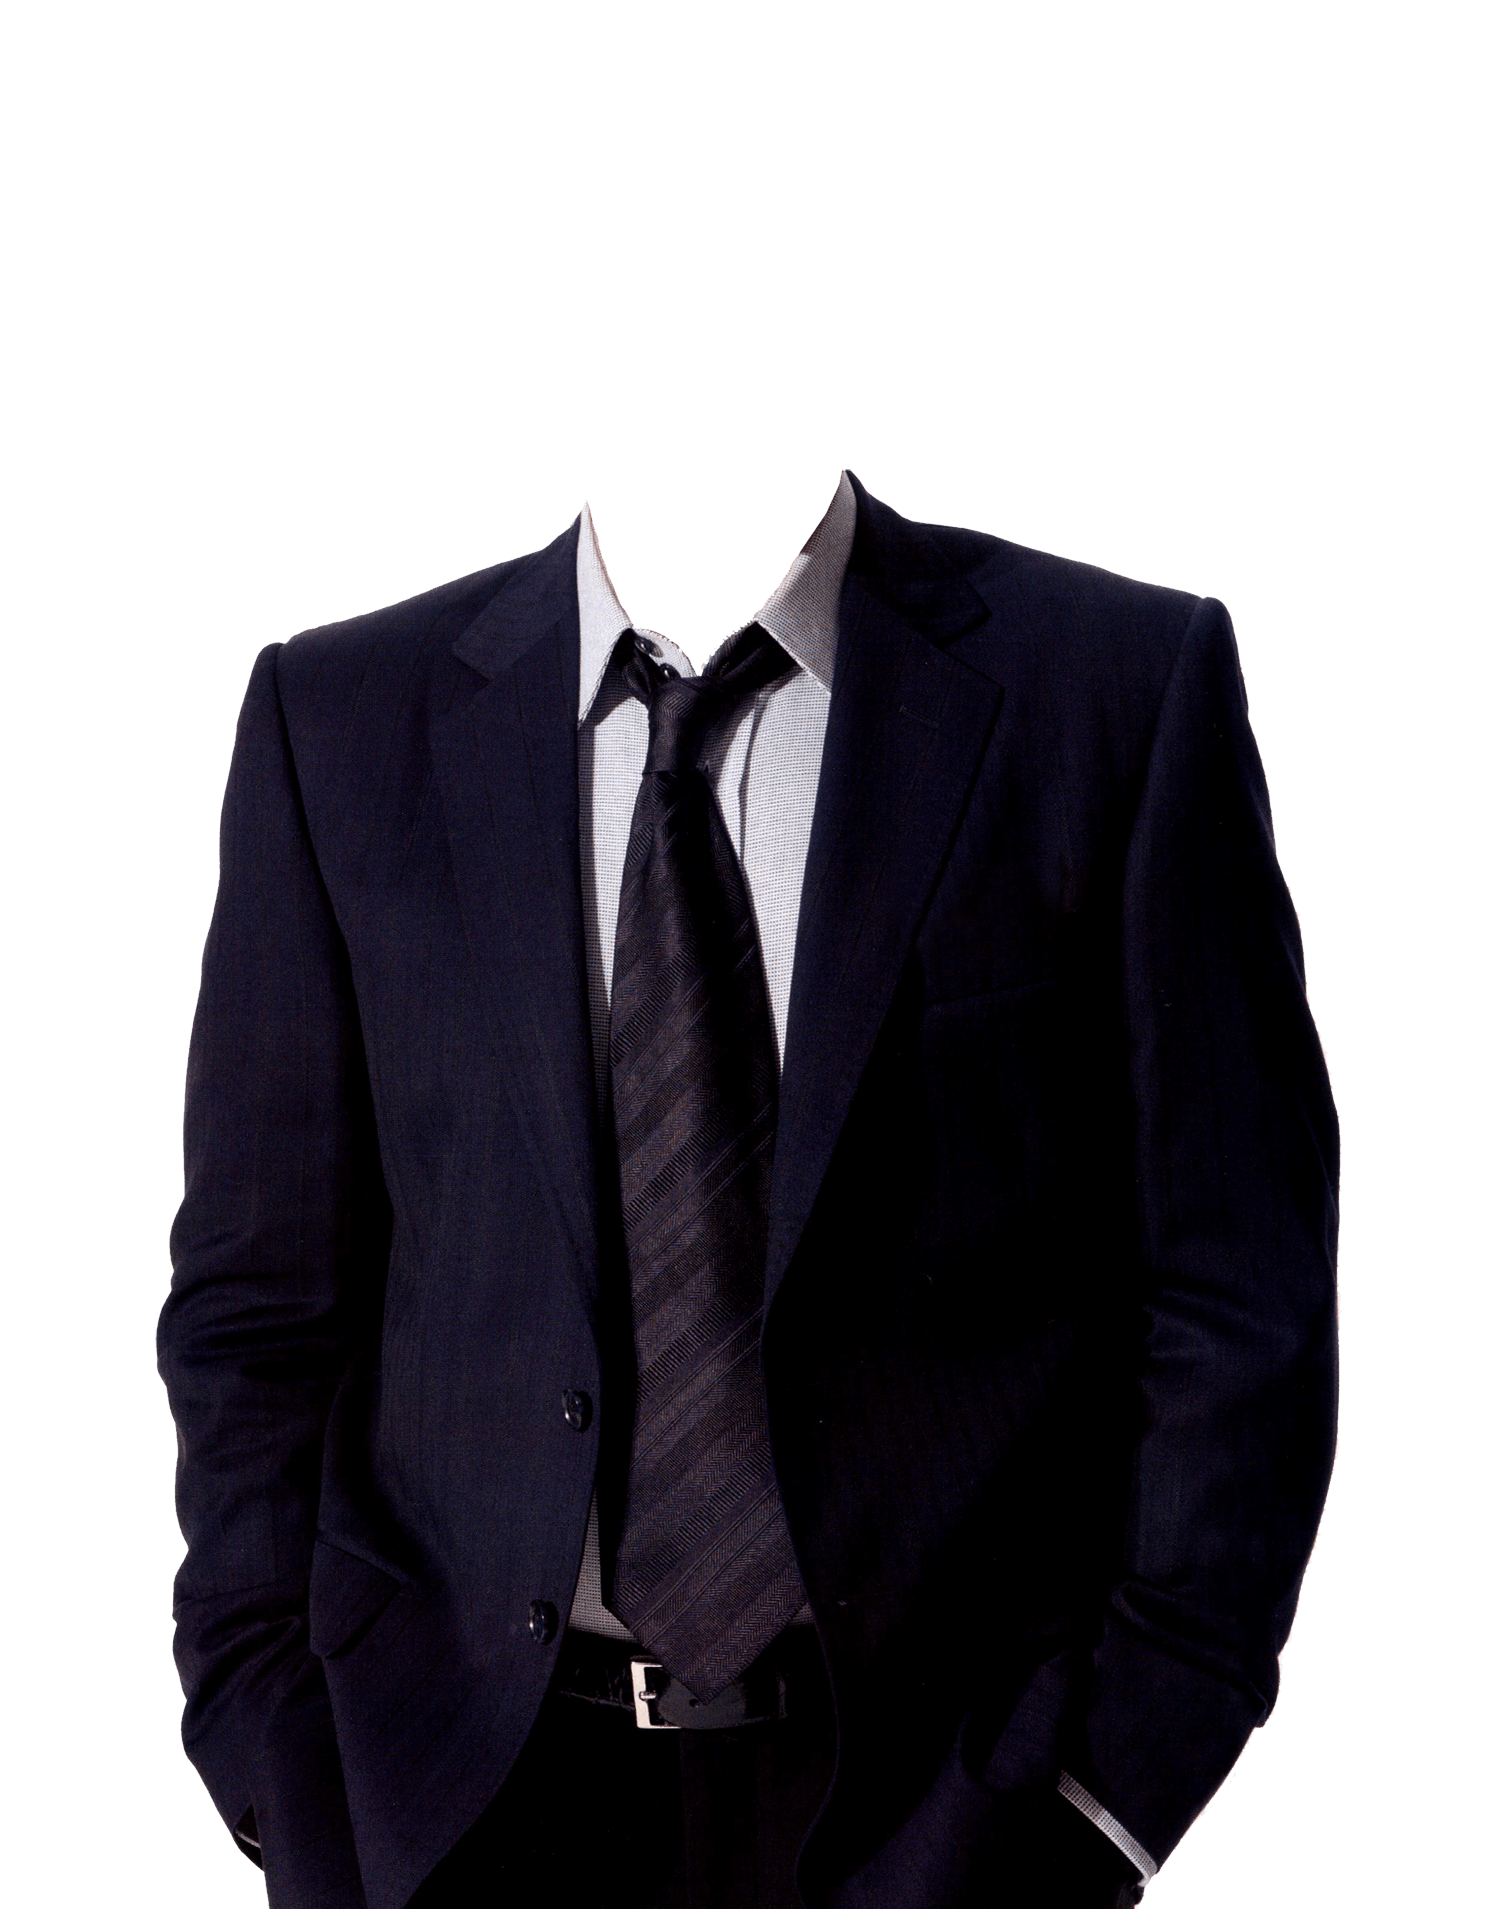 https://freepngimg.com/thumb/suit/19-suit-png-image.png